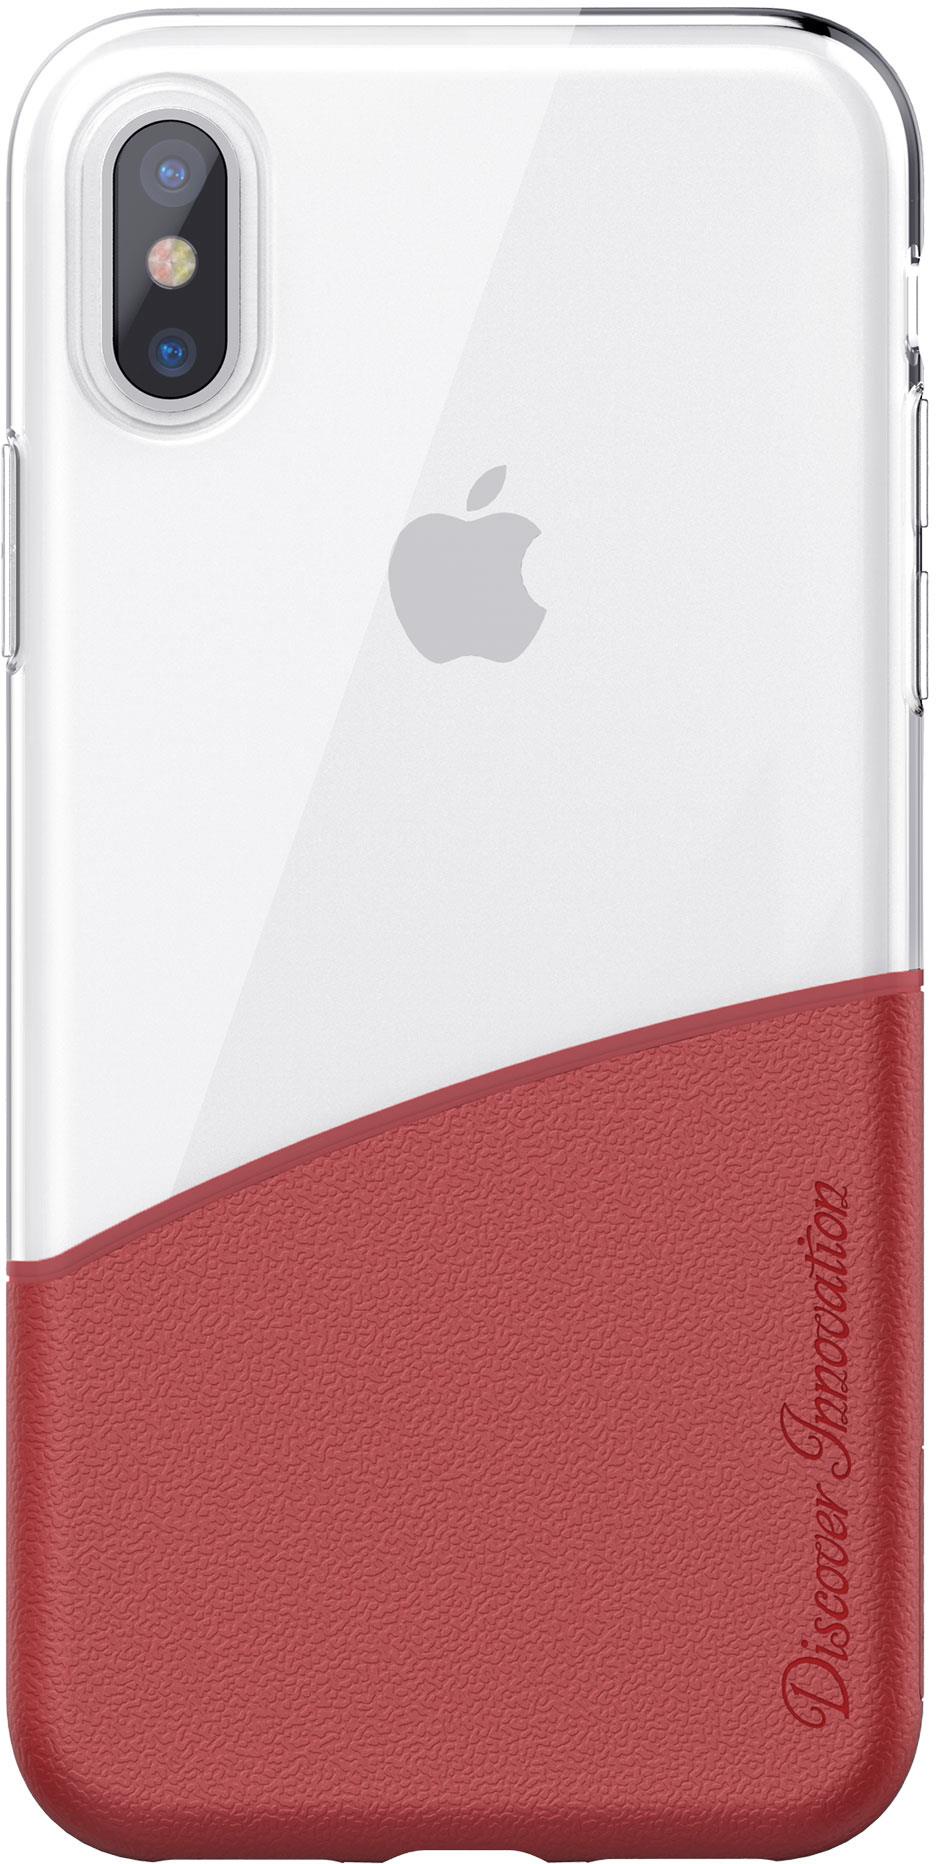 Чехол для сотового телефона Nillkin Half Case, 6902048146501, красный